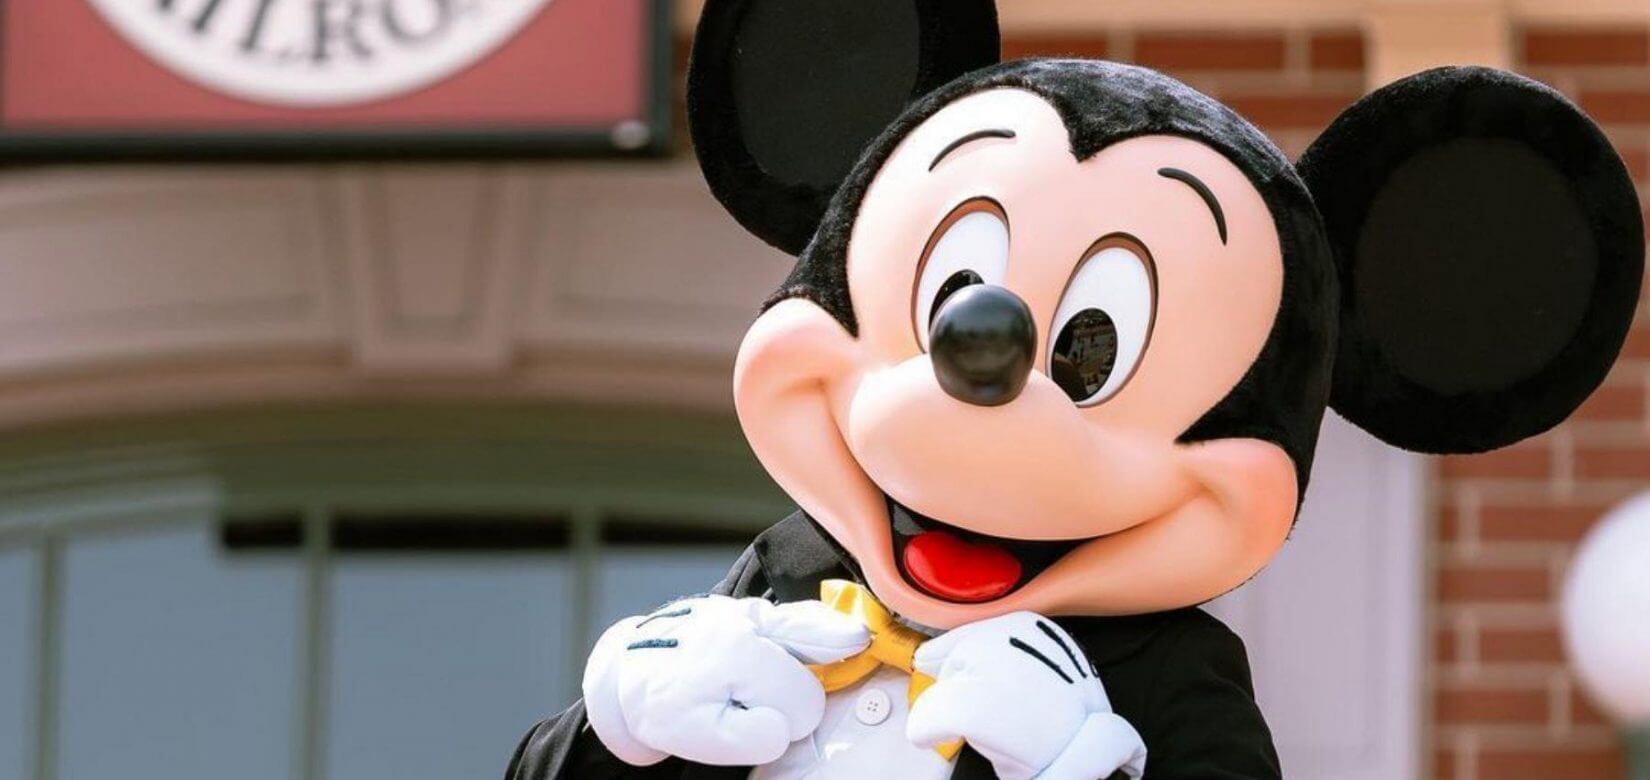 Άνοιξε η Disneyland στο Παρίσι: Με μέτρα και χωρίς αγκαλιές στον Μίκι Μπους